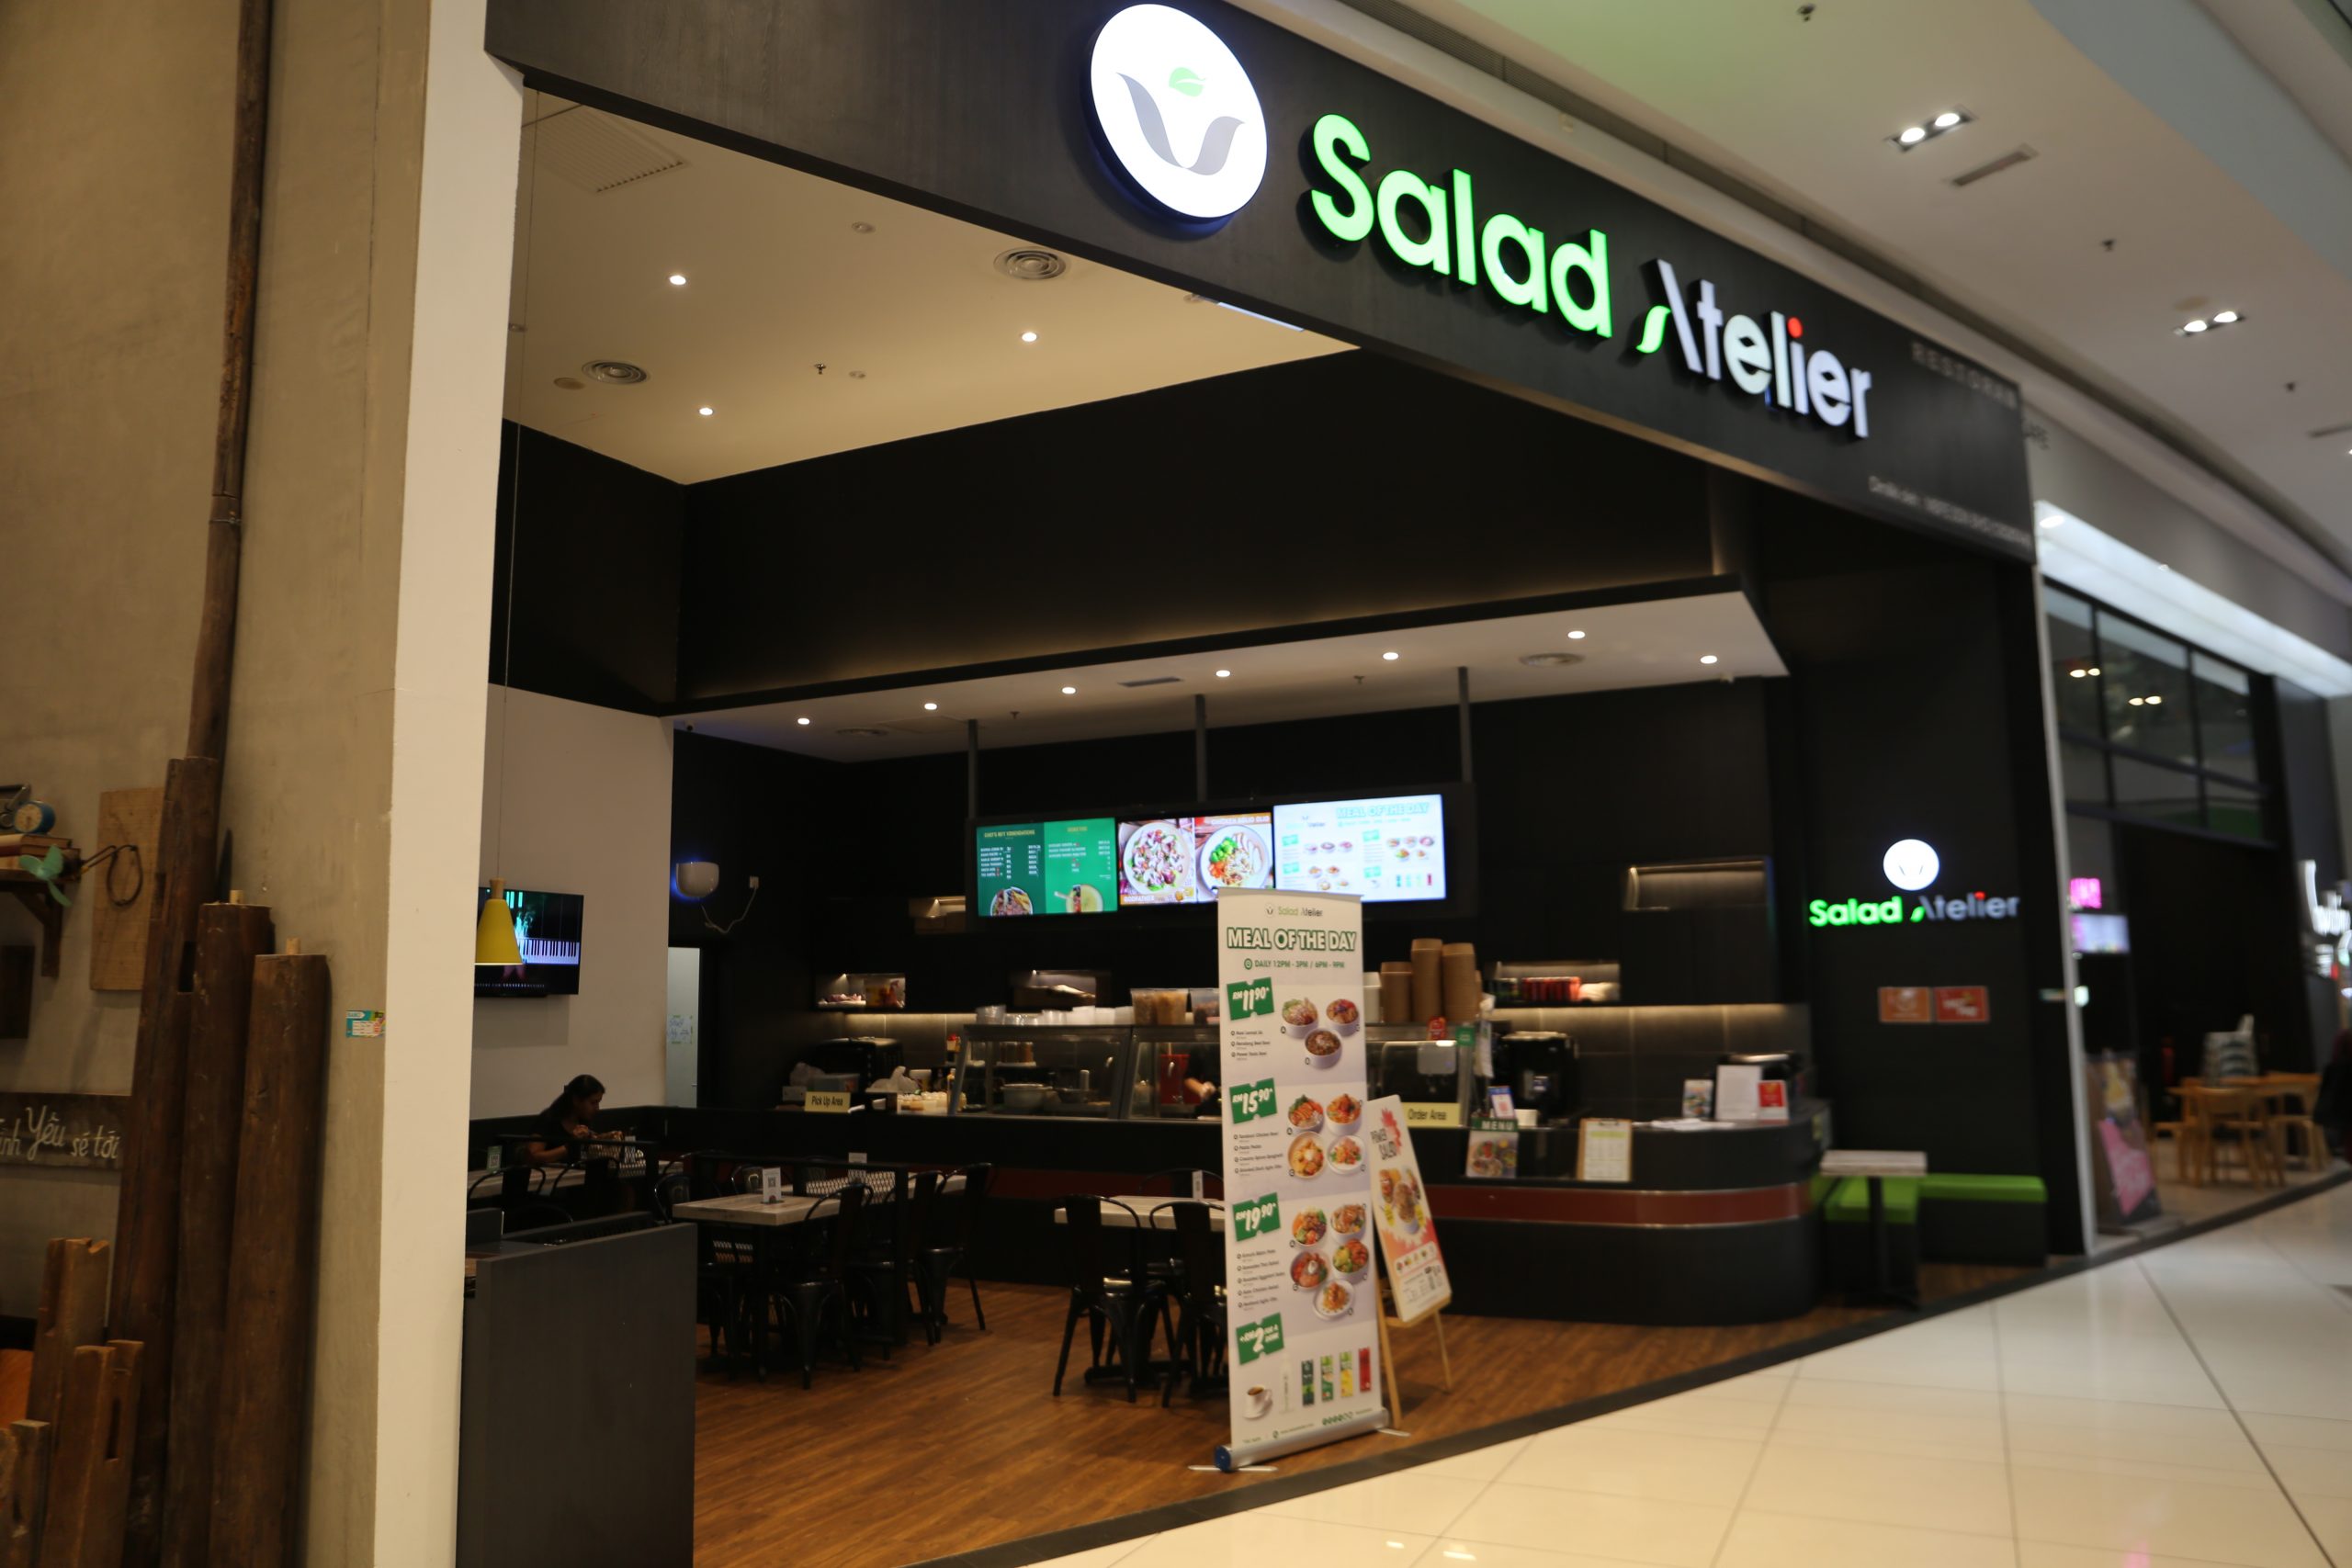 Salad Atelier